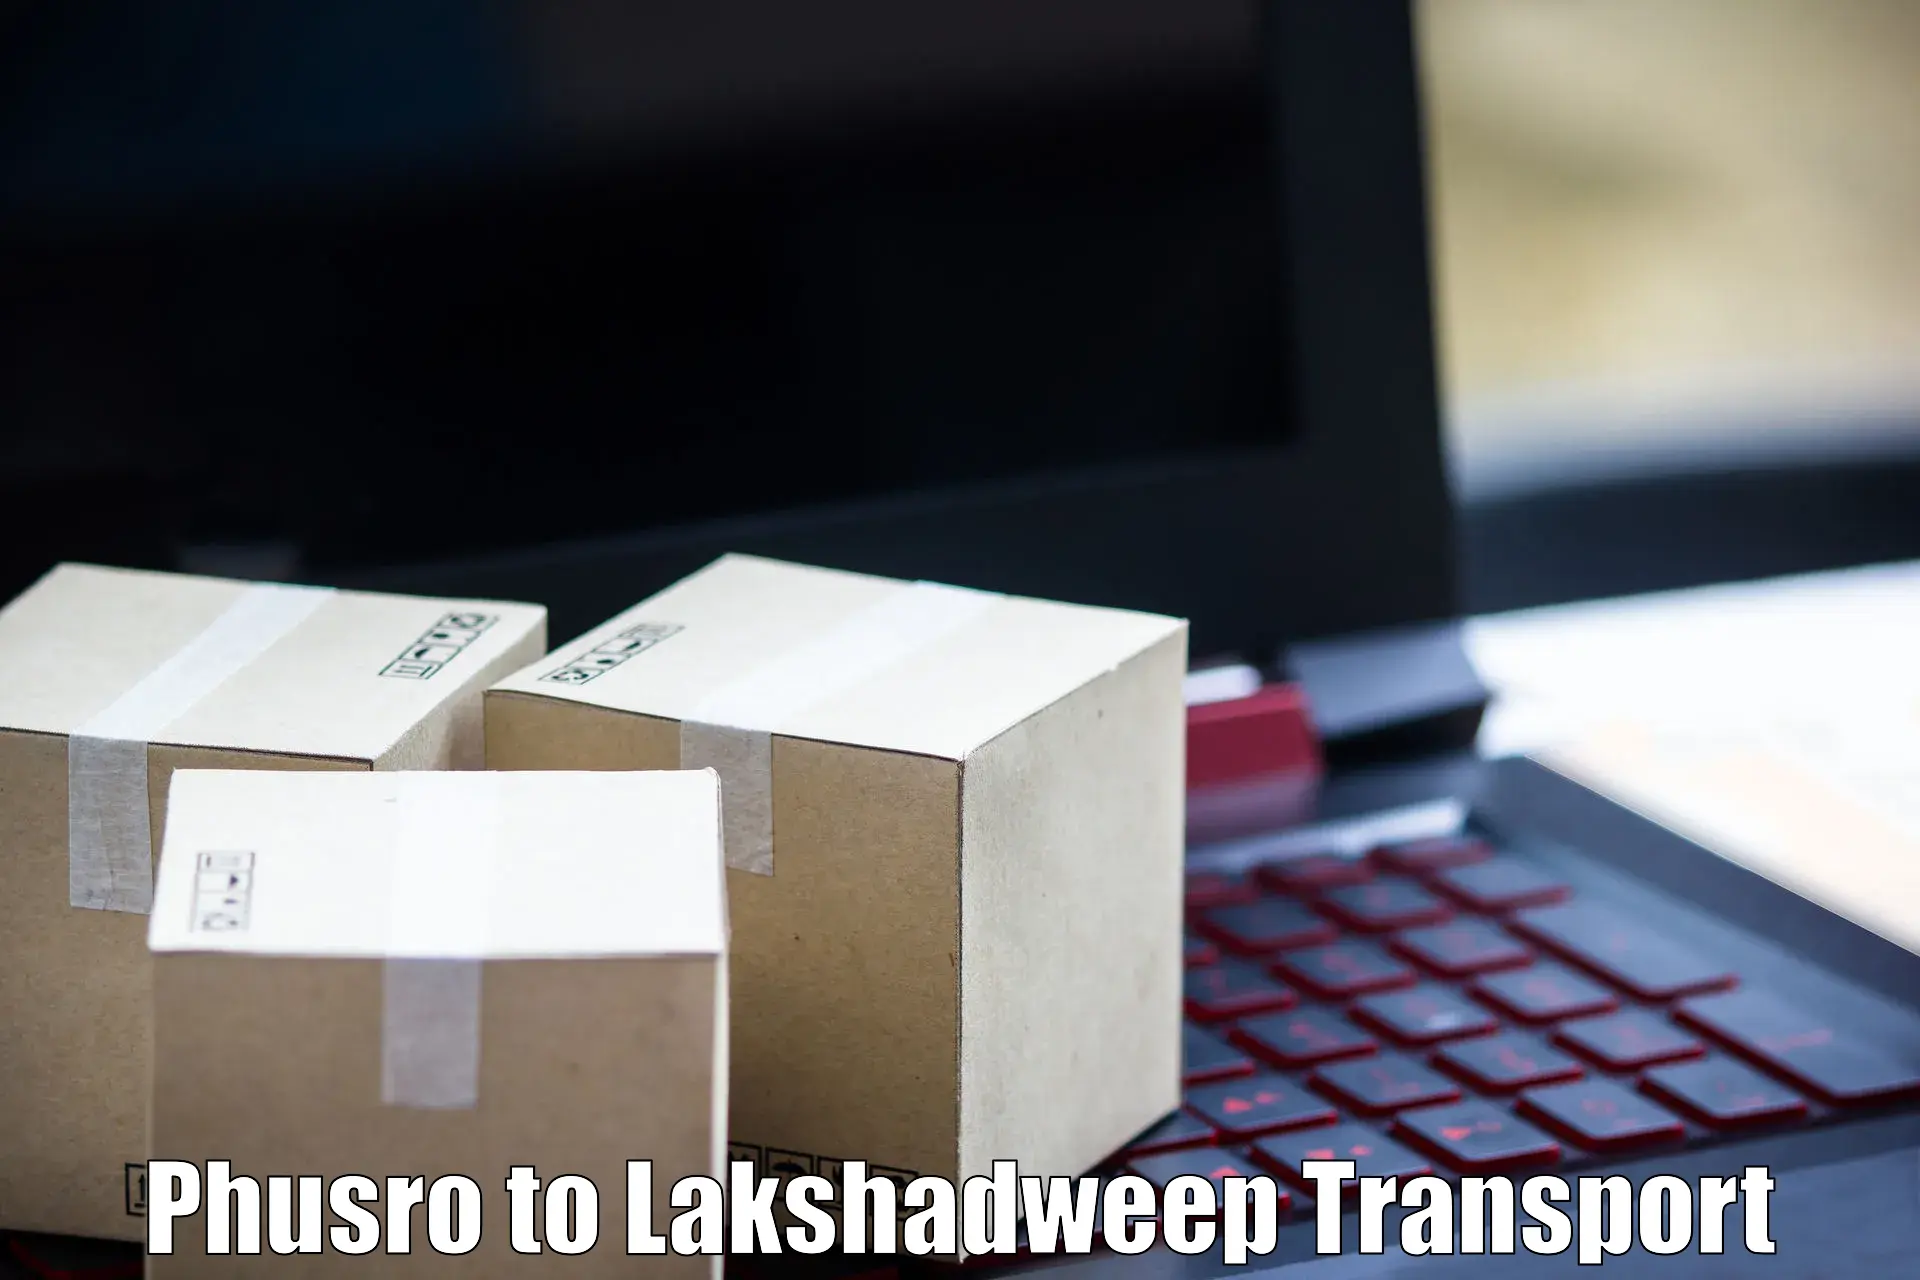 Furniture transport service in Phusro to Lakshadweep